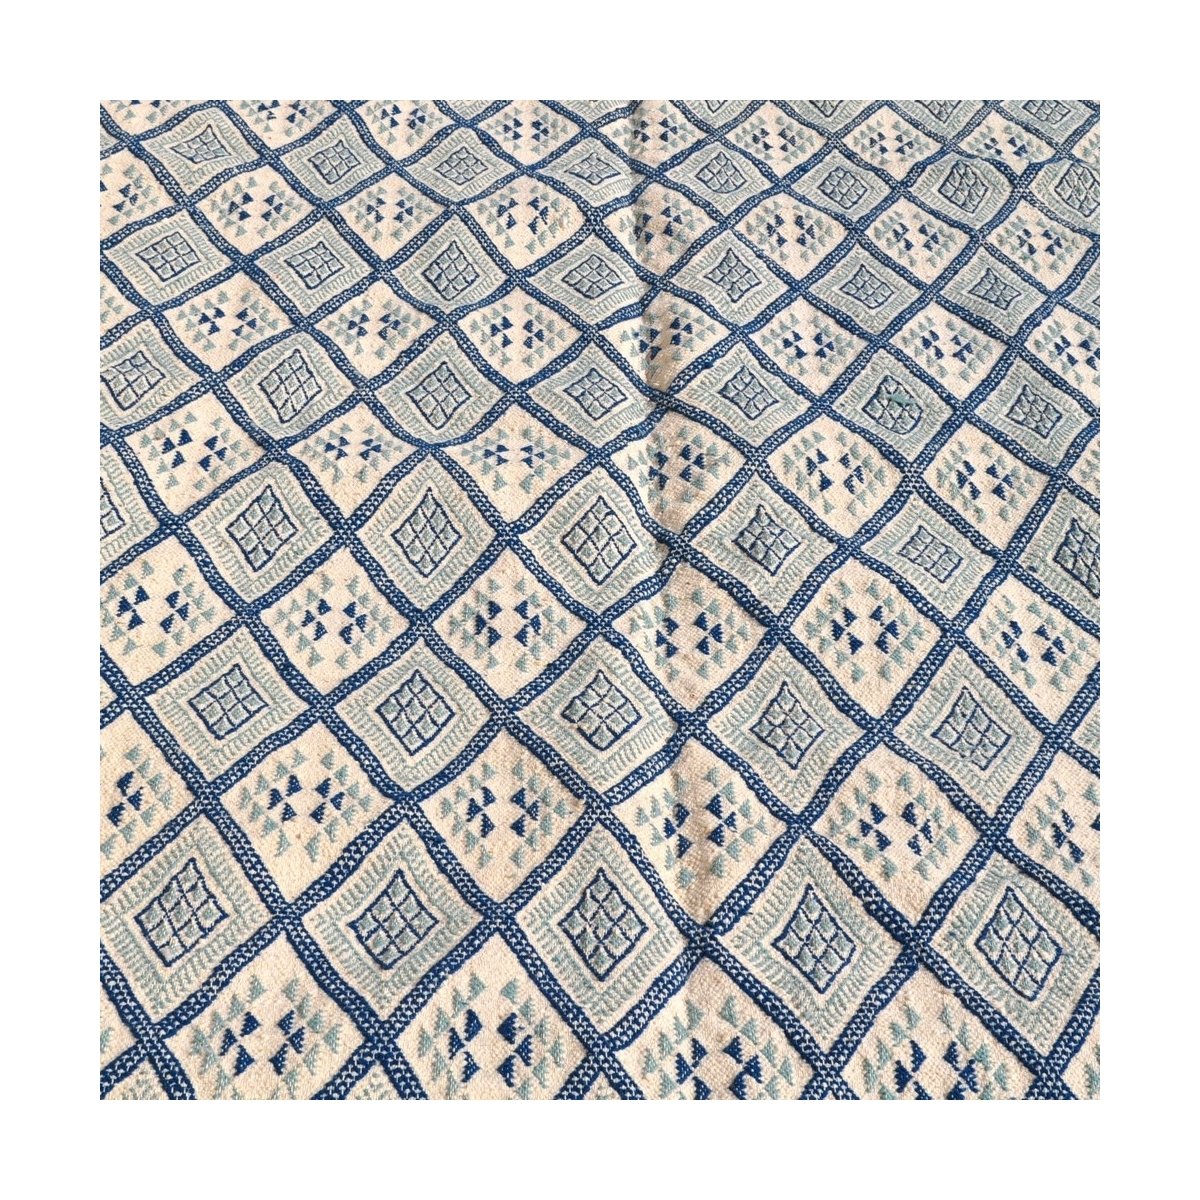 Berber tapijt Groot Tapijt Margoum Thyna 196x314 Blauw/Wit (Handgeweven, Wol, Tunesië) Tunesisch Margoum Tapijt uit de stad Kair